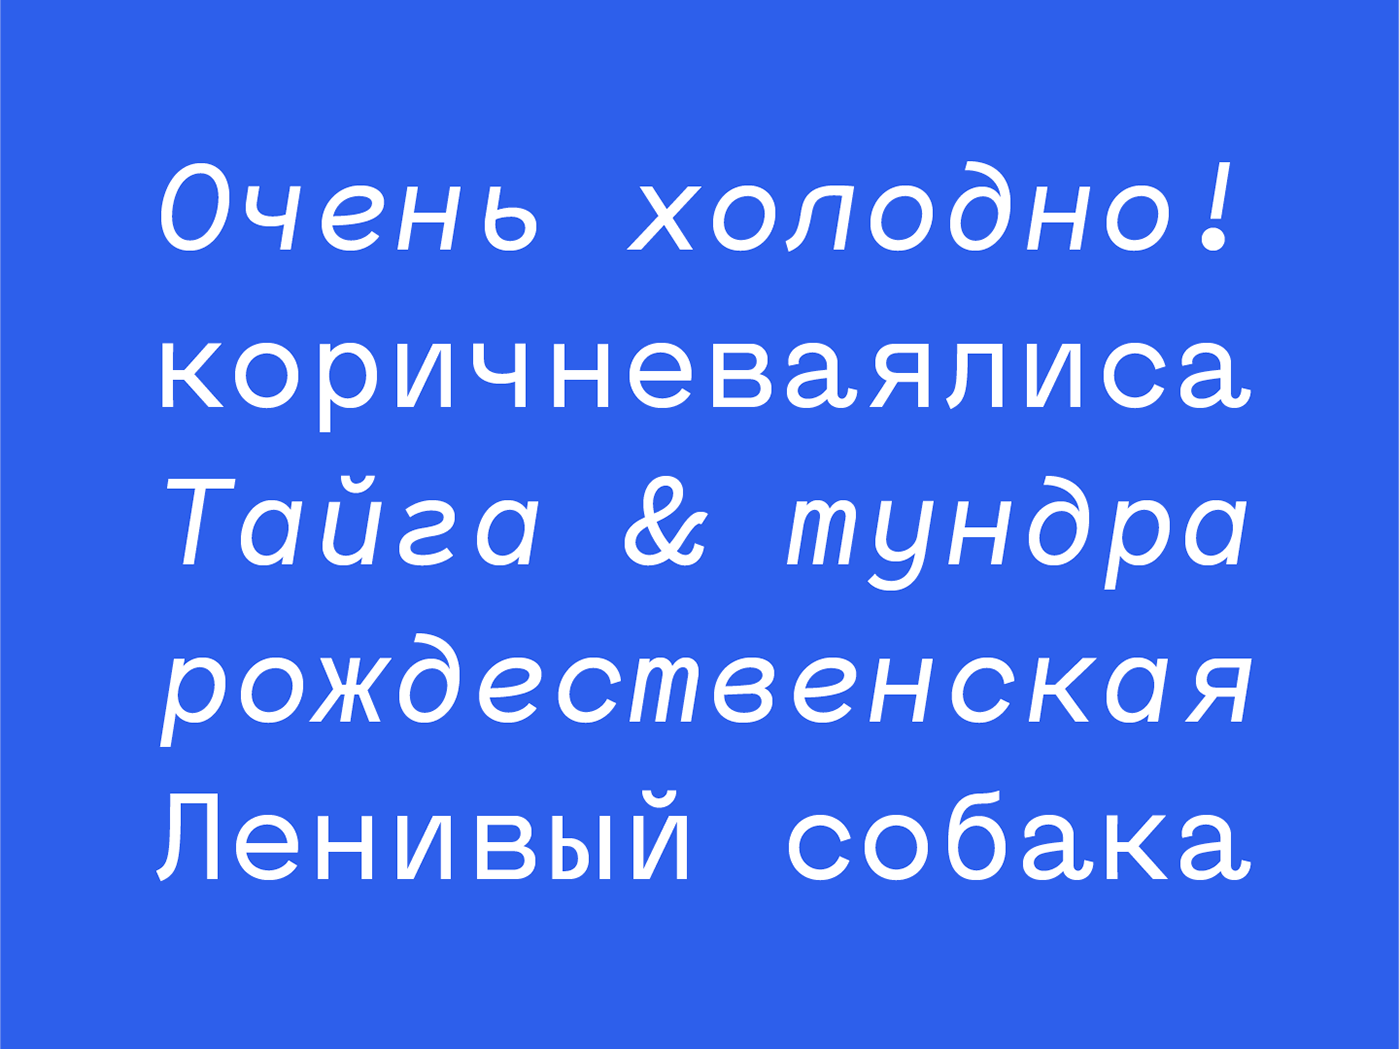 Typeface type font Mono monospace monospaced Menoe Mene Grotesque Menoe Grotesque sans sans serif grotesque hungarumlaut #TYPO16xAdobe